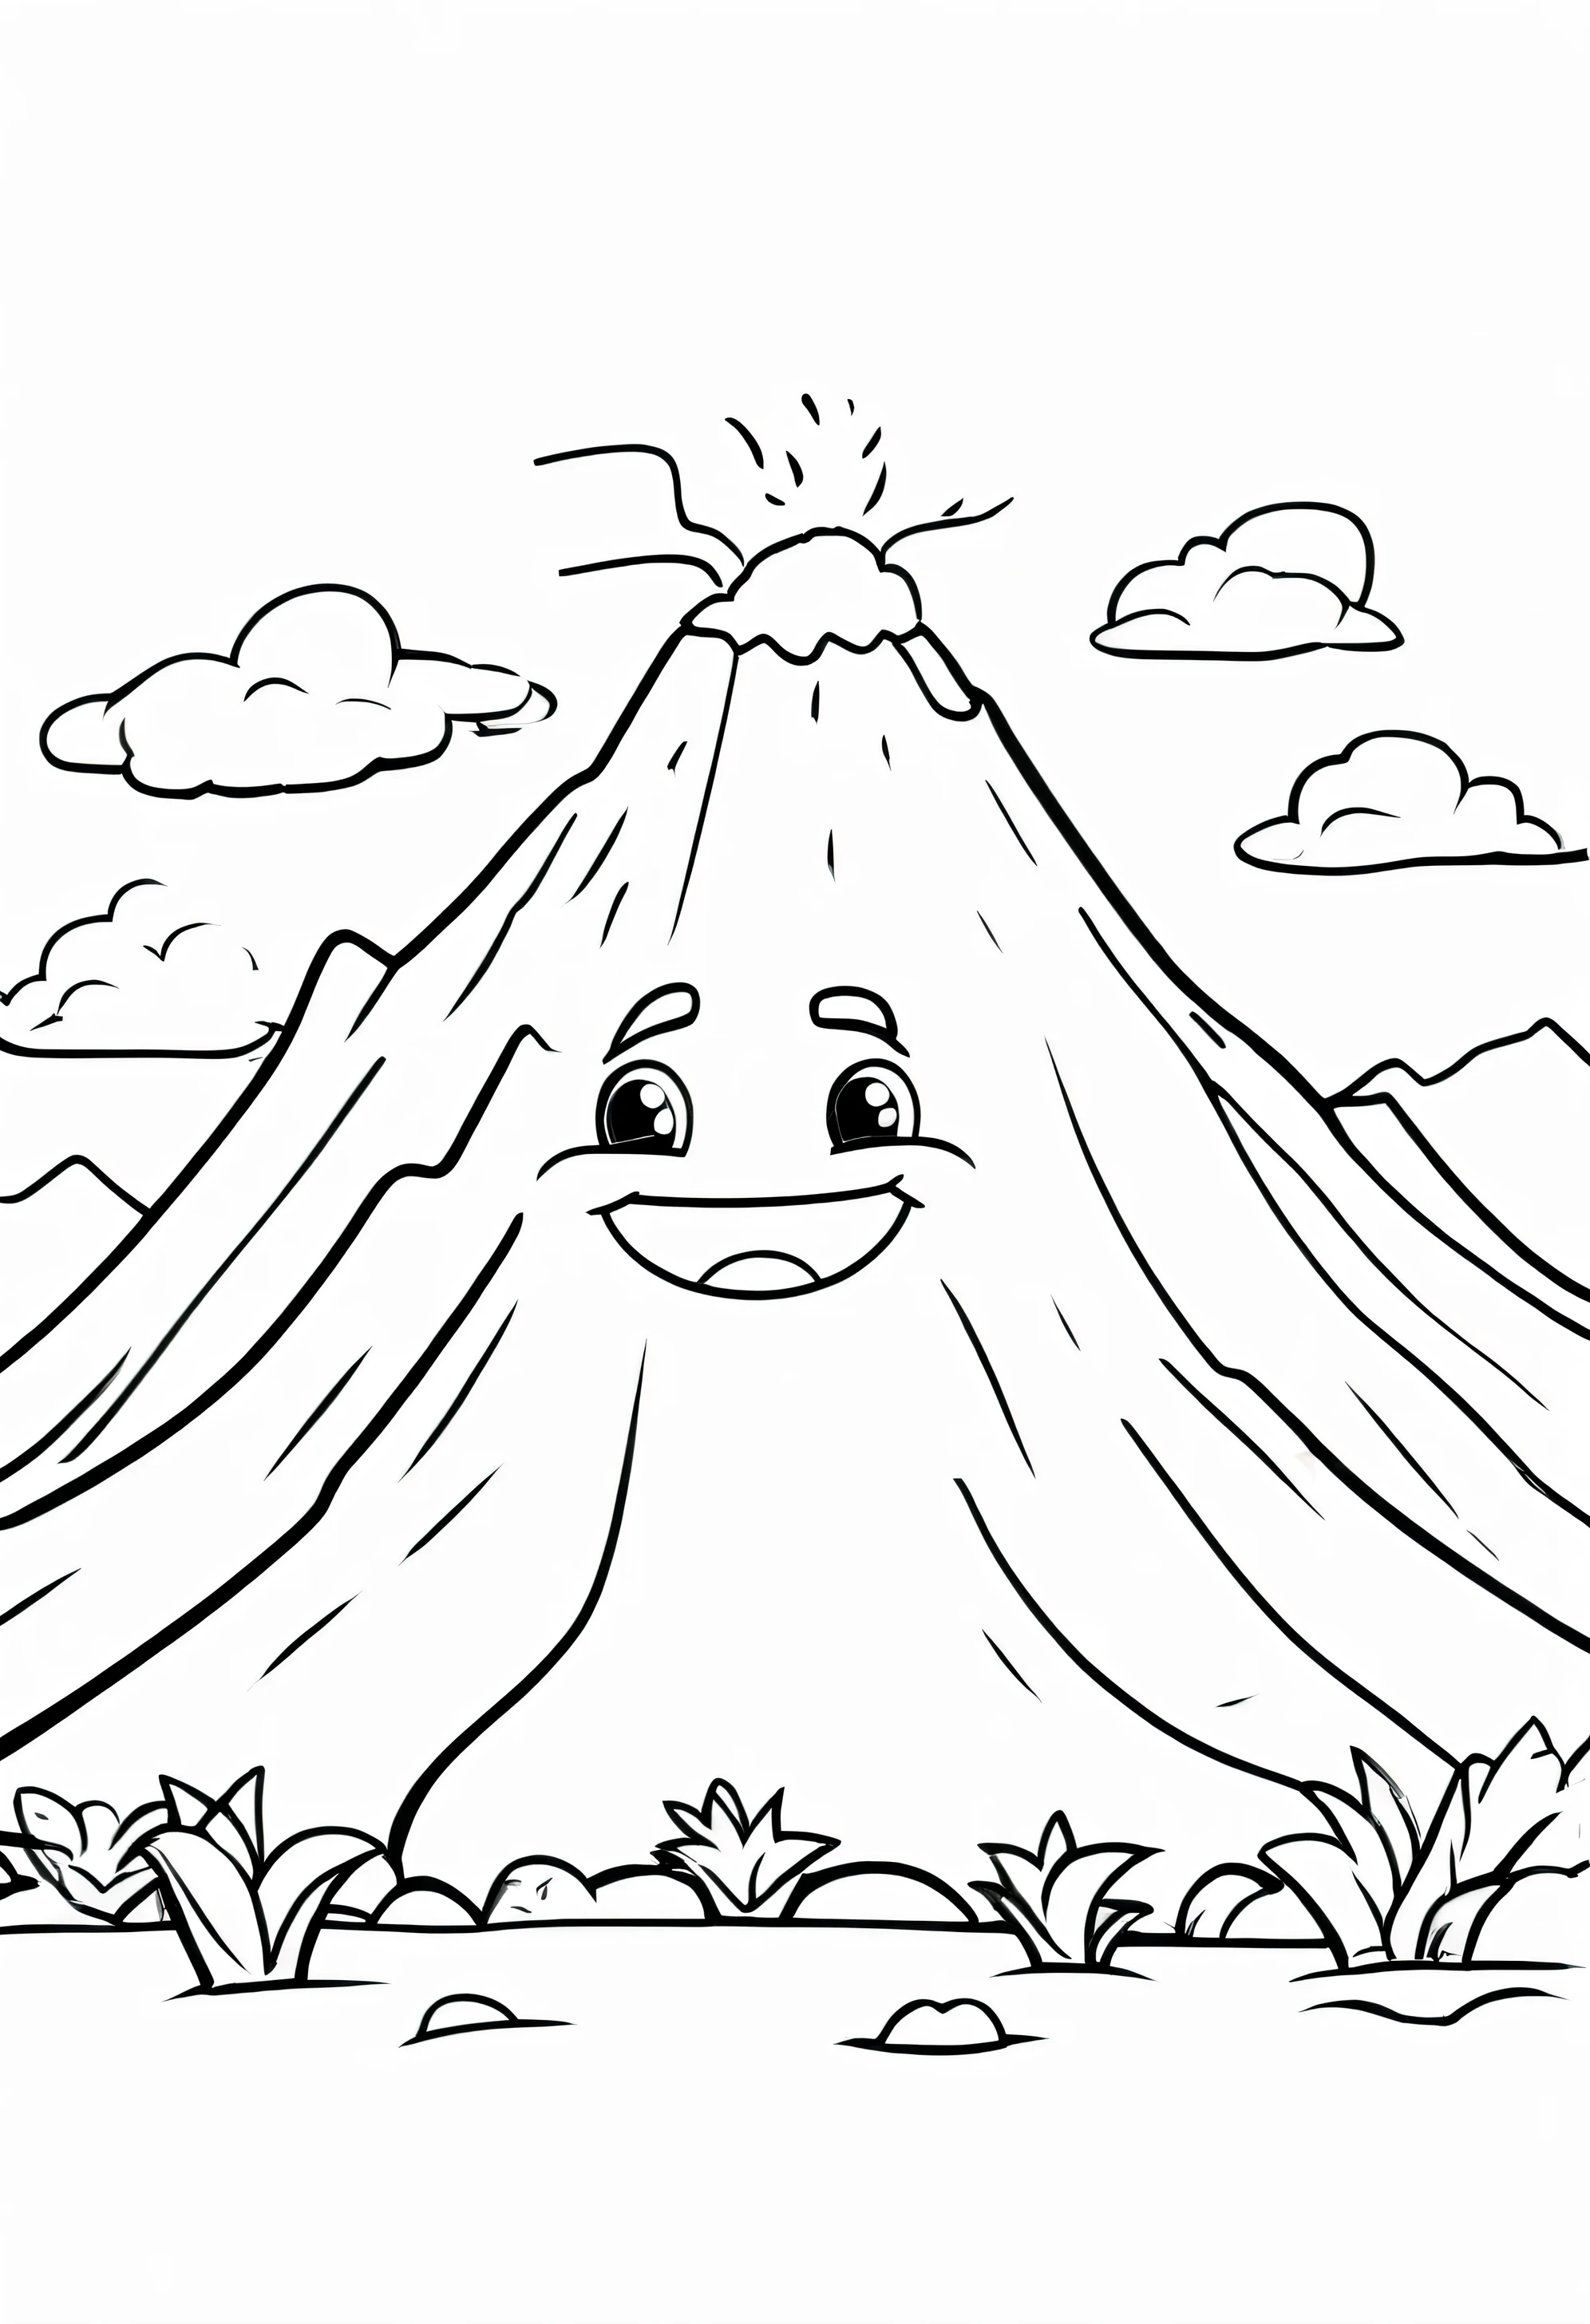 Erstelle einen freundlichen Vulkan-Charakter mit lächelndem Gesicht, Umrisskunst Mit Weiß, weißer Hintergrund, Skizzenstil, Ganzkörper, nur Gliederung verwenden, Cartoon-Stil, Sauber und klar und gut umrissen, Stellen Sie sicher, dass der Vulkan ein glattes und einladendes Aussehen hat, Und halten Sie das Design minimalistisch für einfaches Färben. Das Ziel ist, es ansprechend und zugänglich zu machen für Kinder im Alter von 2 bis 5 Jahren, die sich mitten in ihrer künstlerischen Reise befinden., Habe es schwarz und weiß gemacht